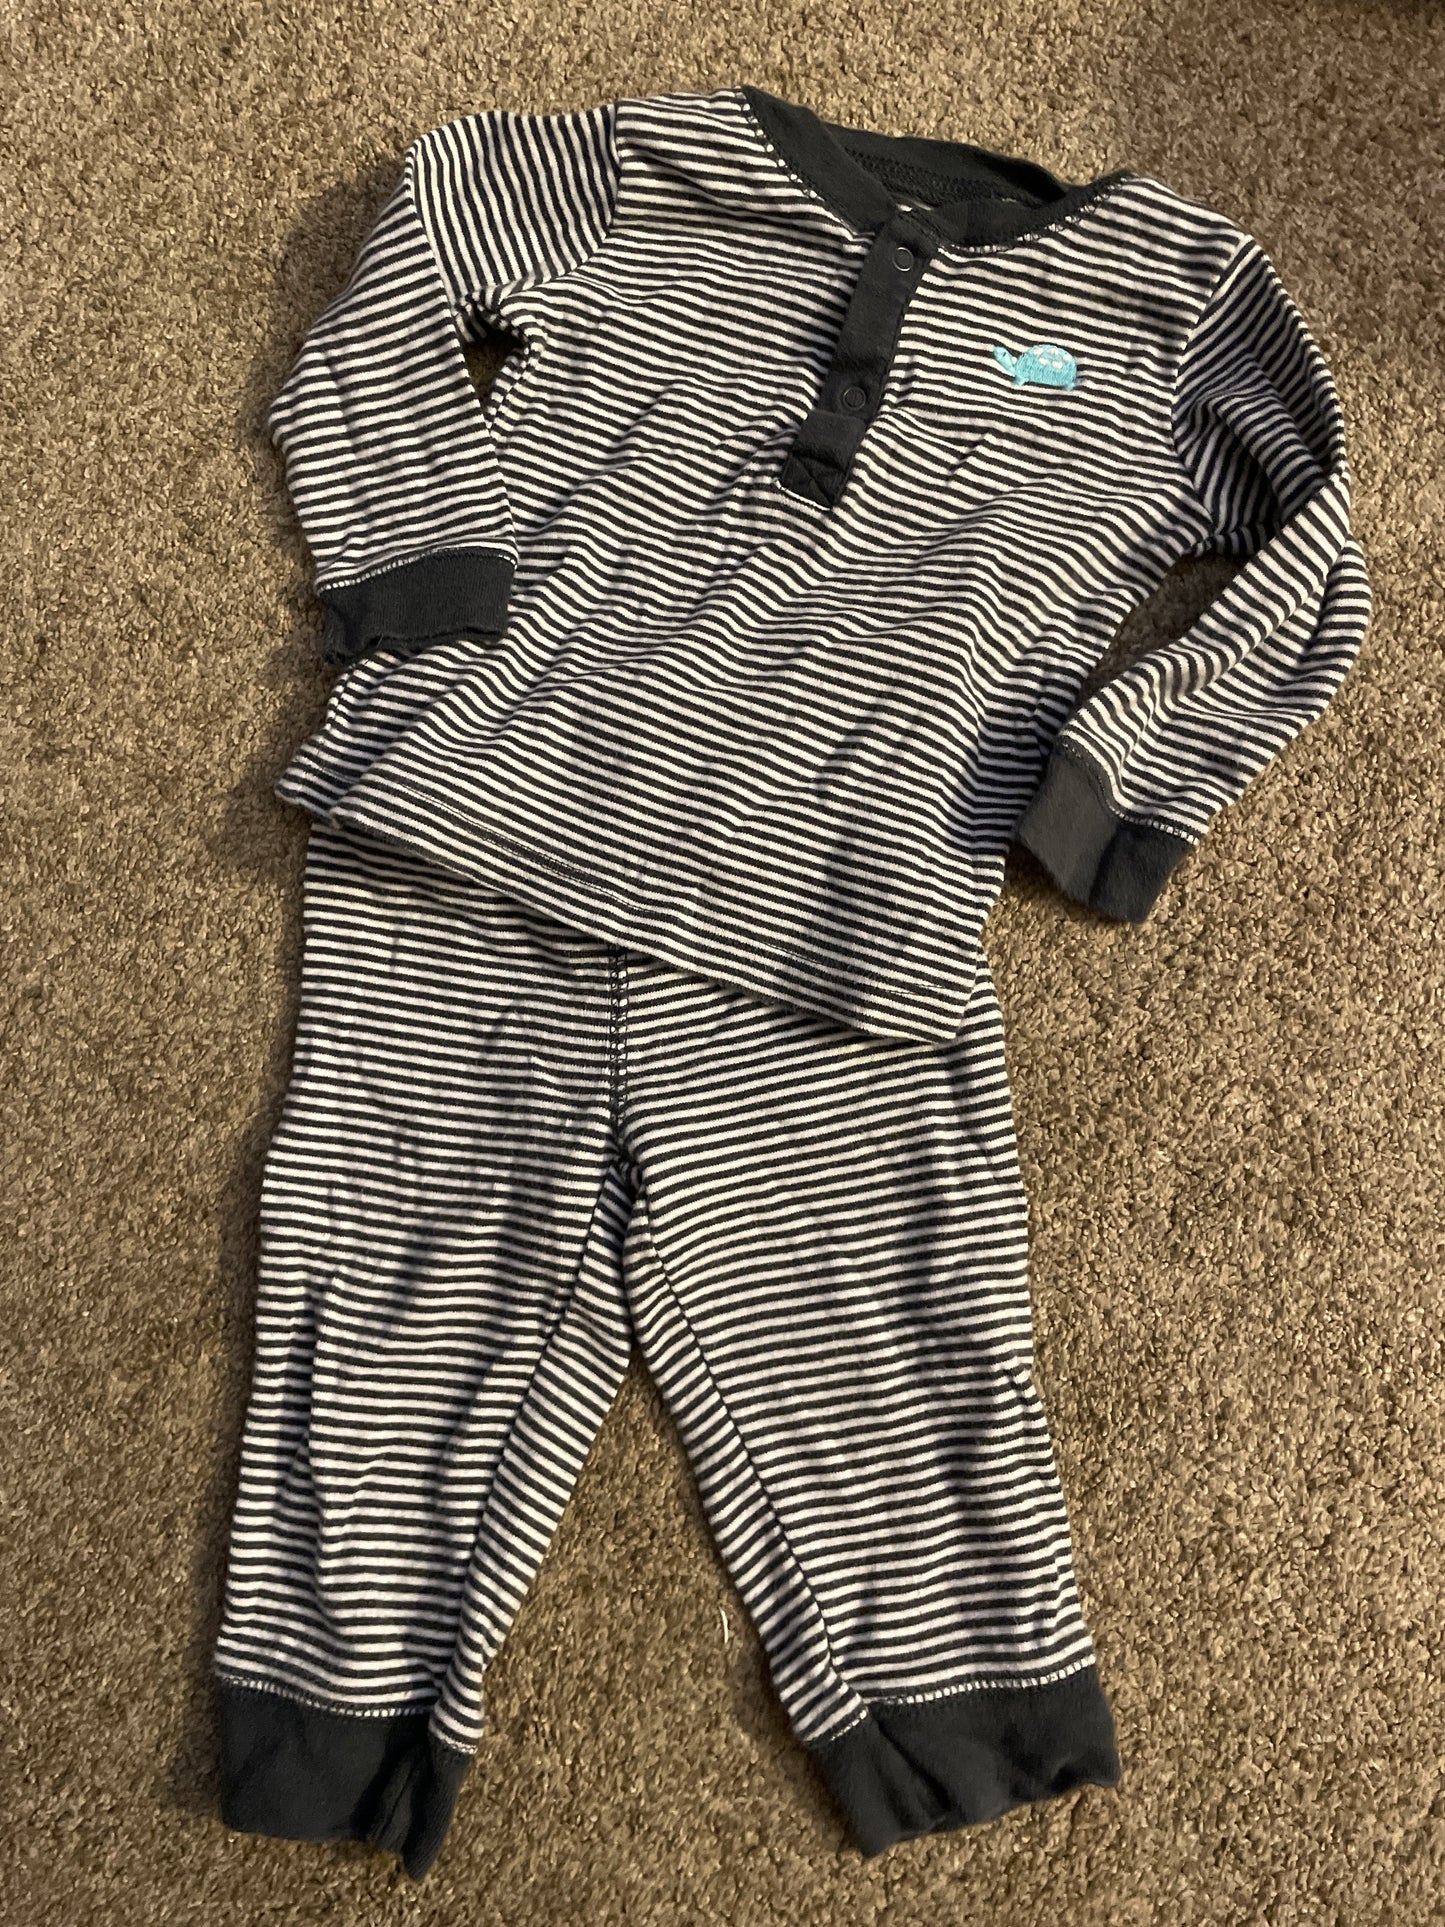 Carters 9 month pajama set